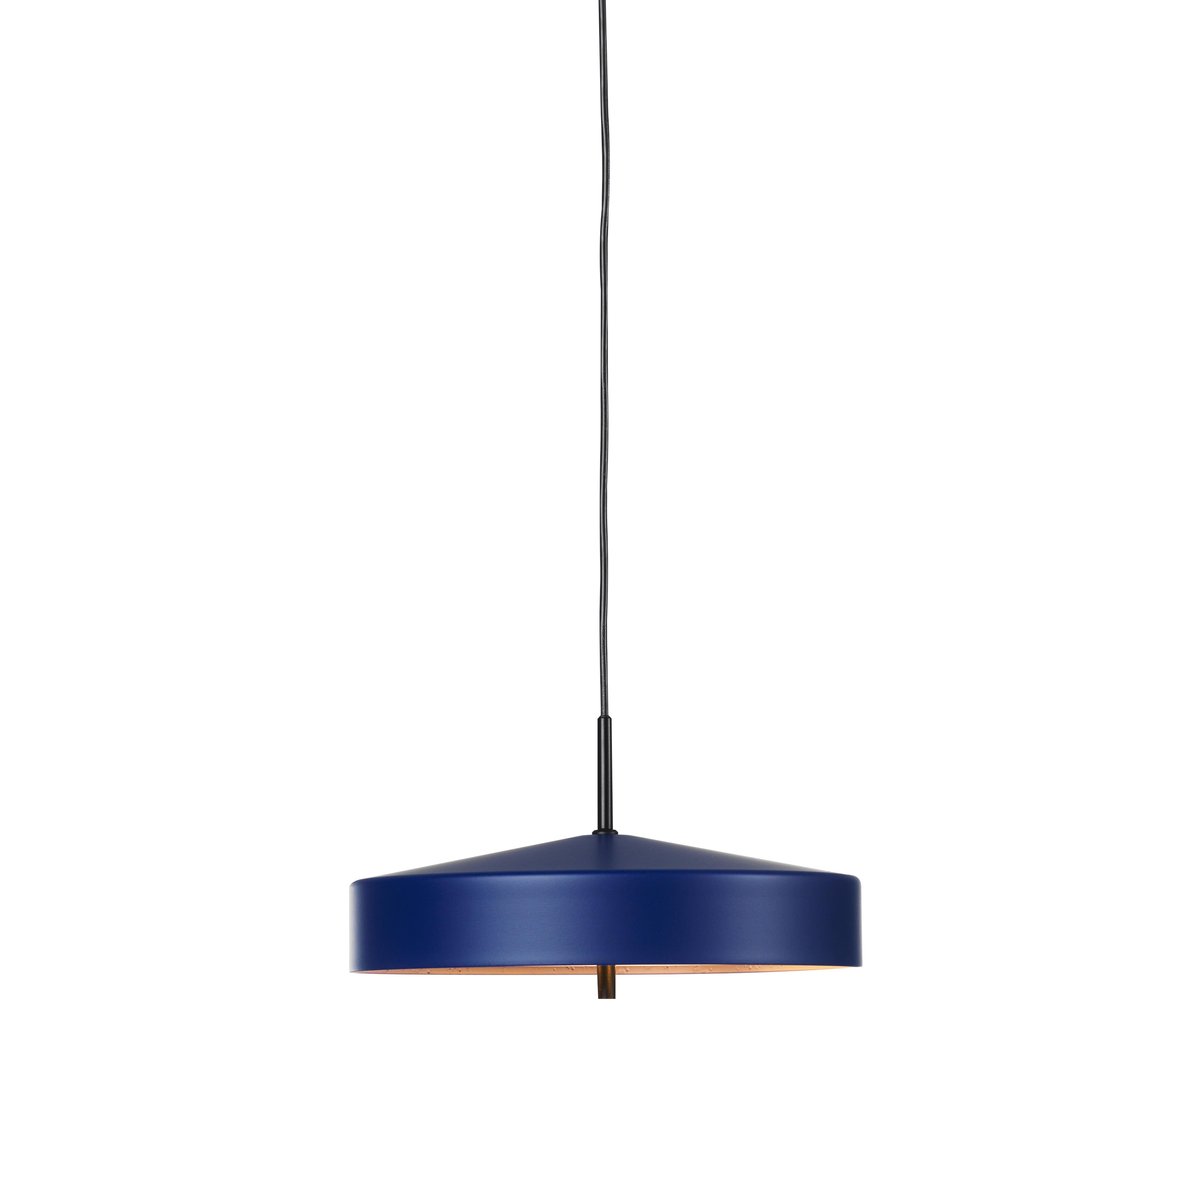 Bilde av Bsweden Cymbal lampe blå 32 cm